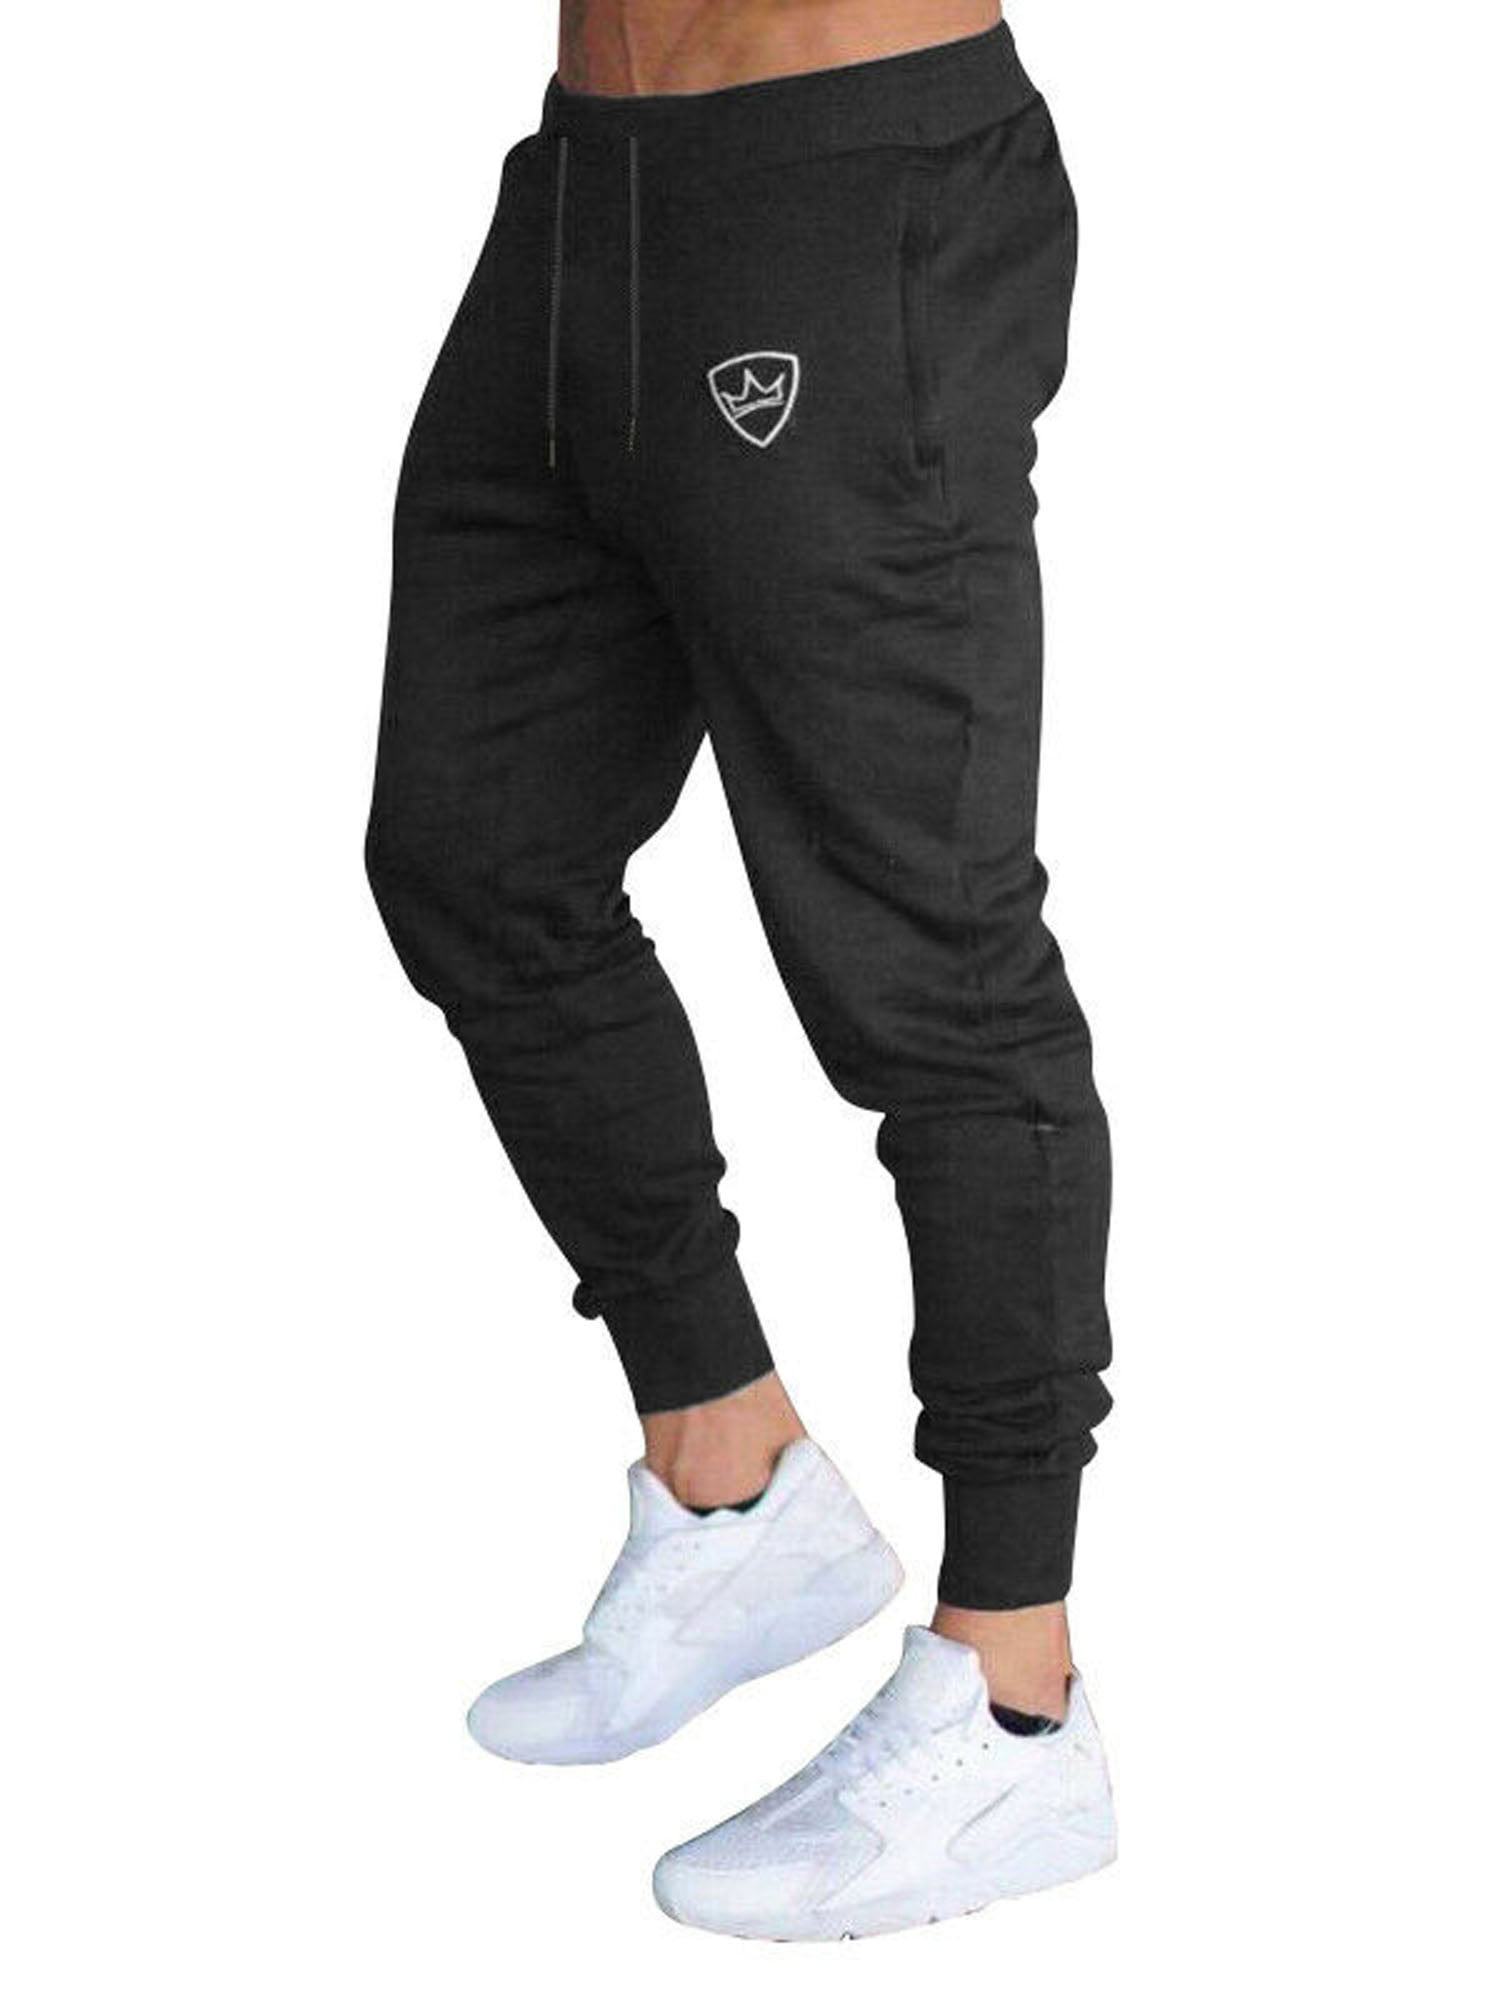 MODCHOK Mens Jogger Sweatpants Fleece Pants Workout Trousers Slim Fit Tracksuit